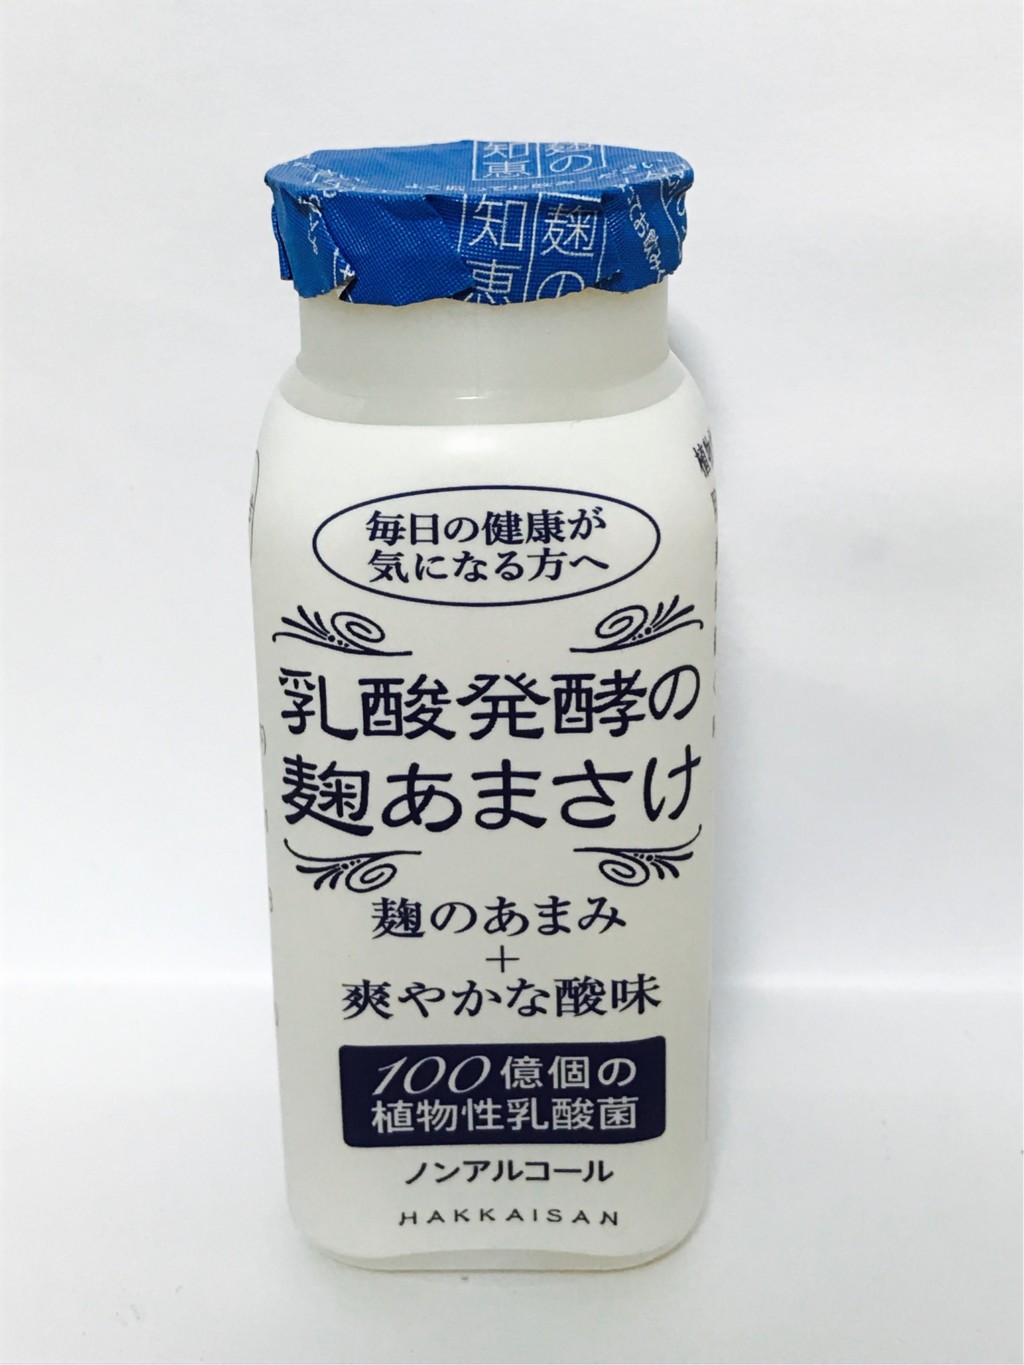 八海醸造の米麹甘酒『乳酸発酵の麹あまさけ』